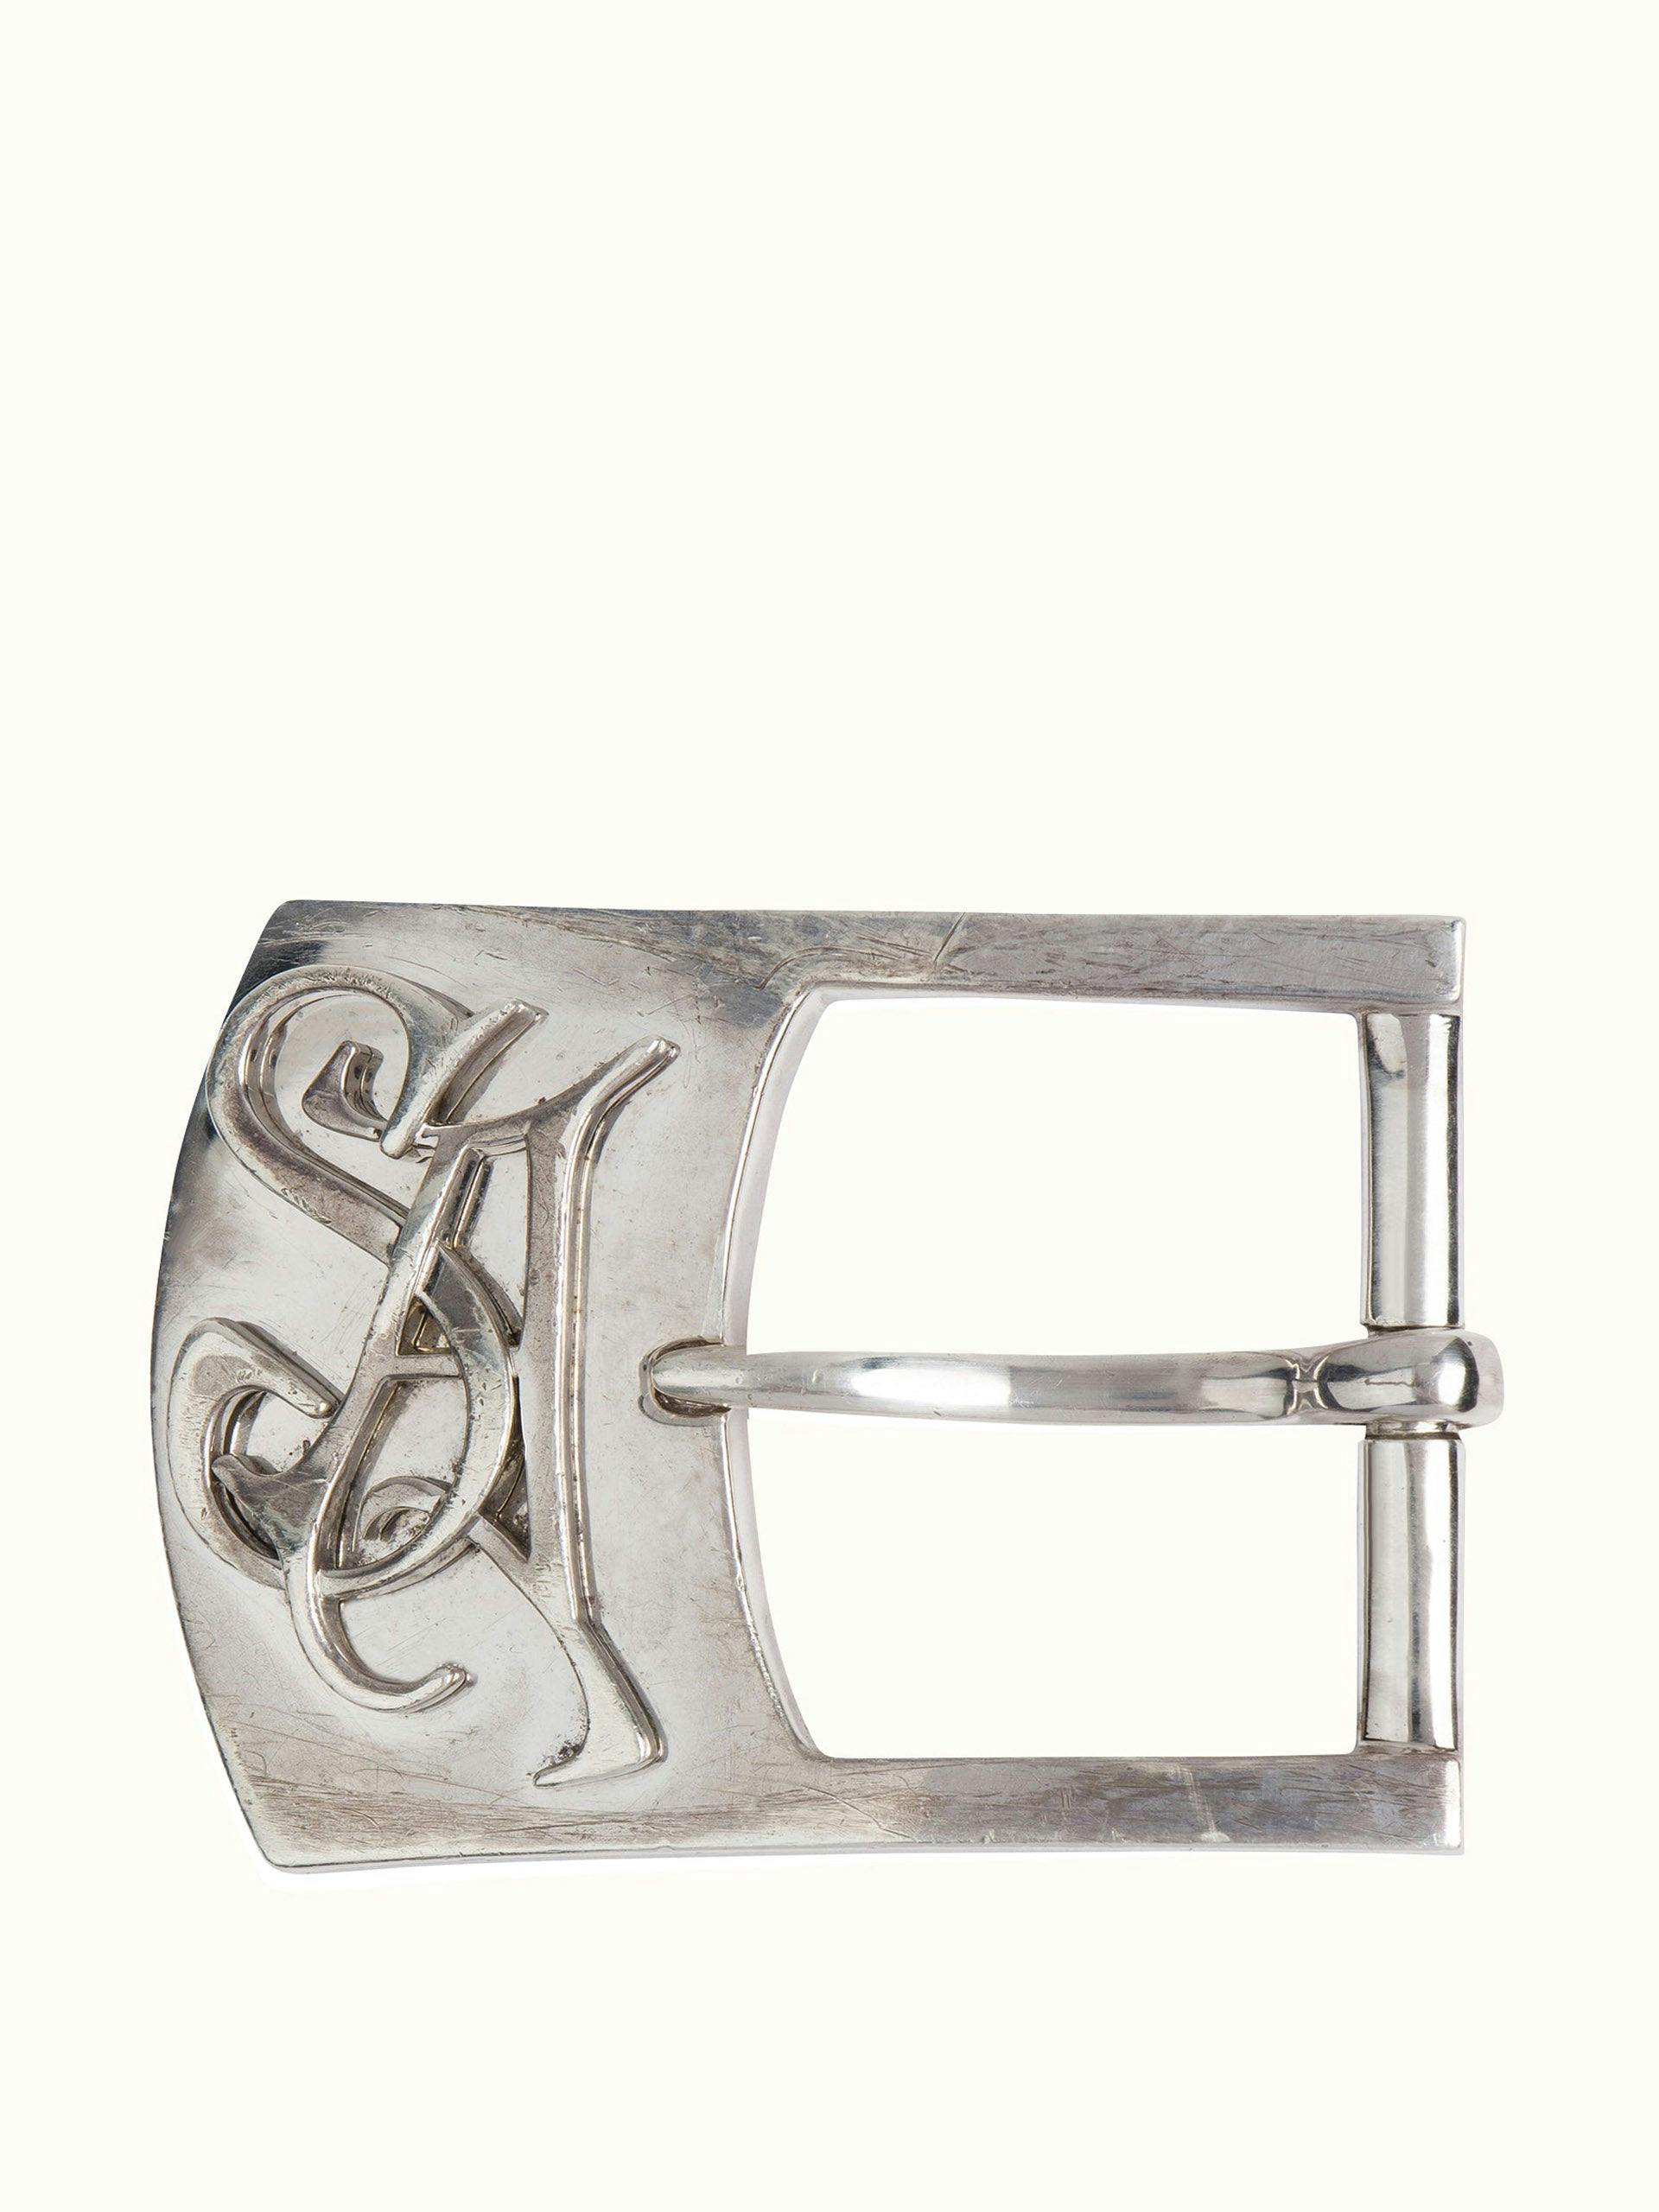 Sterling silver belt buckle